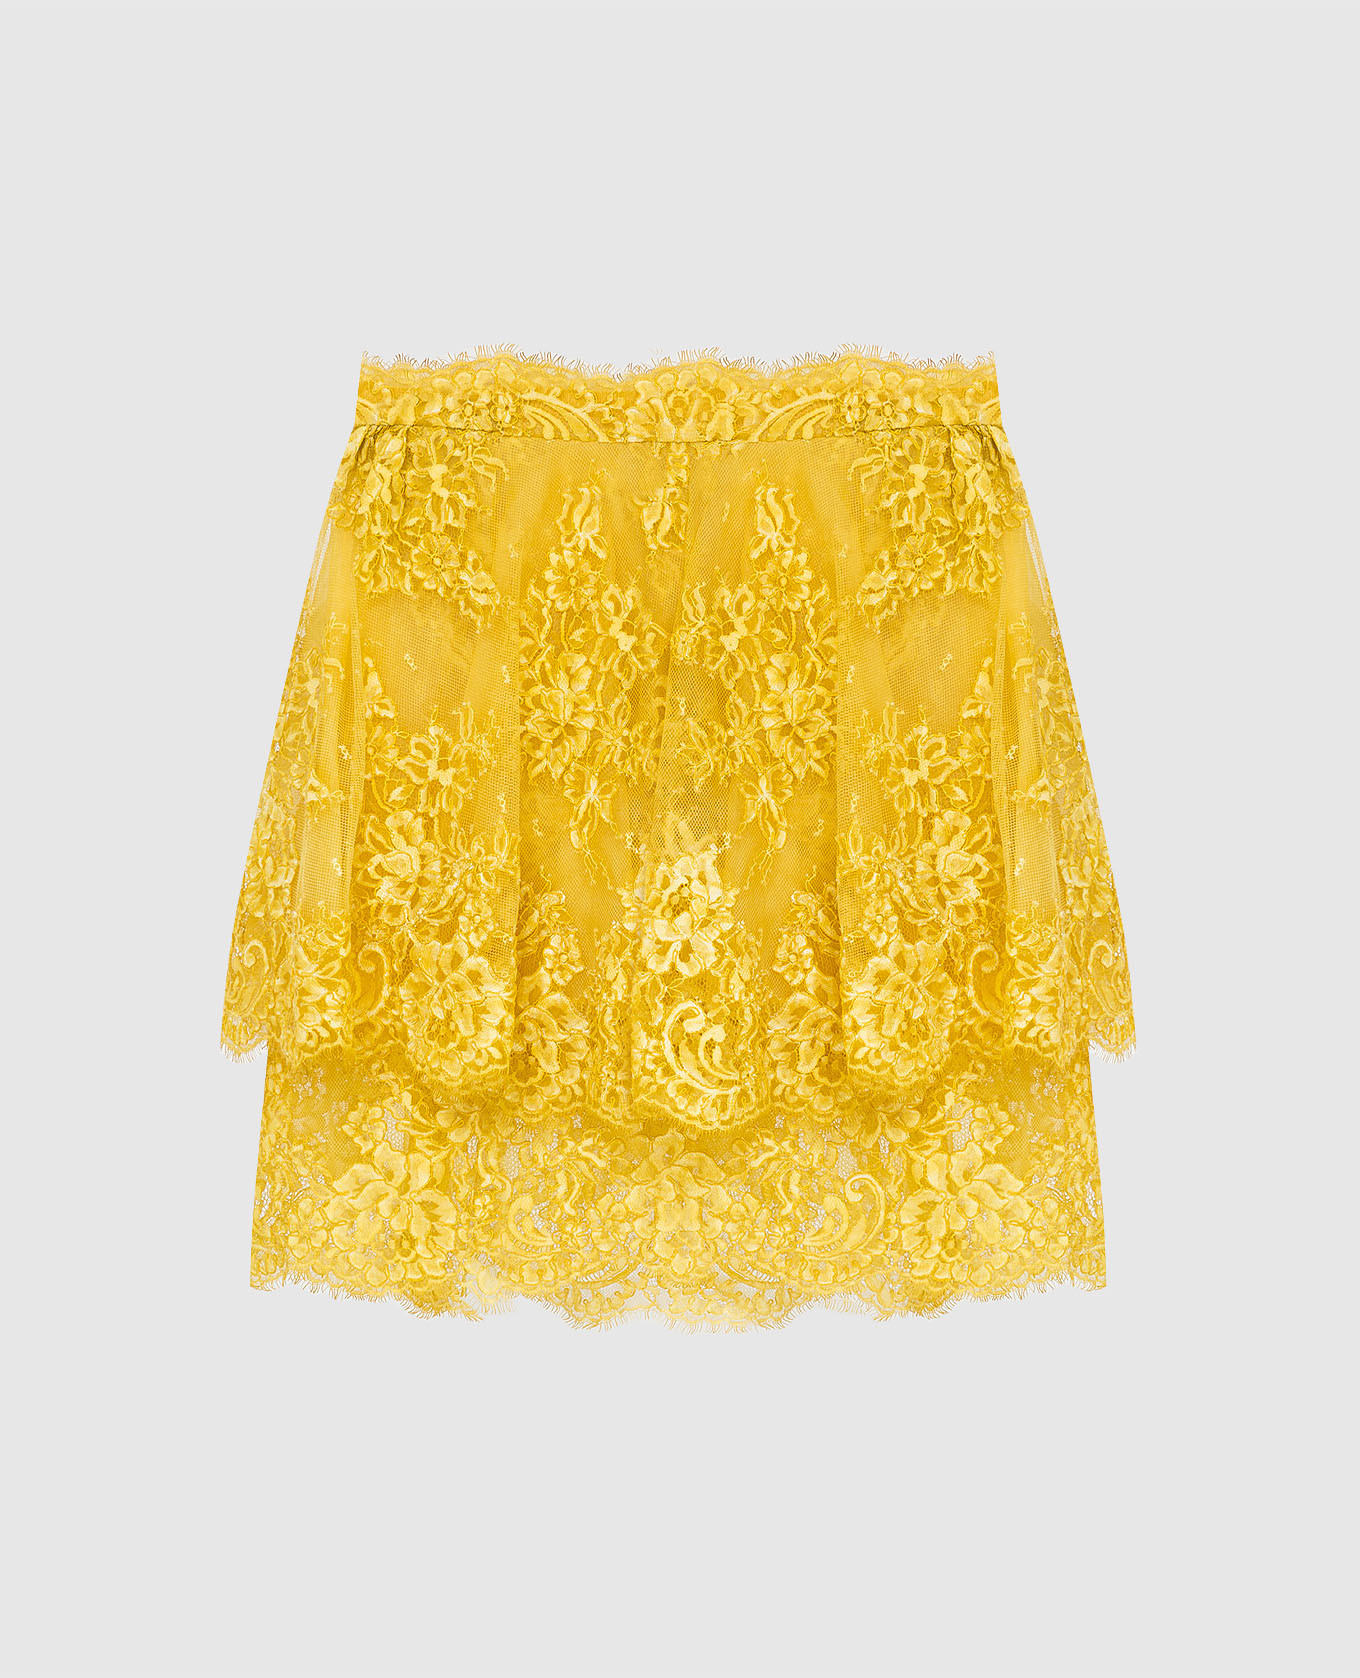 Yellow fishnet mini skirt